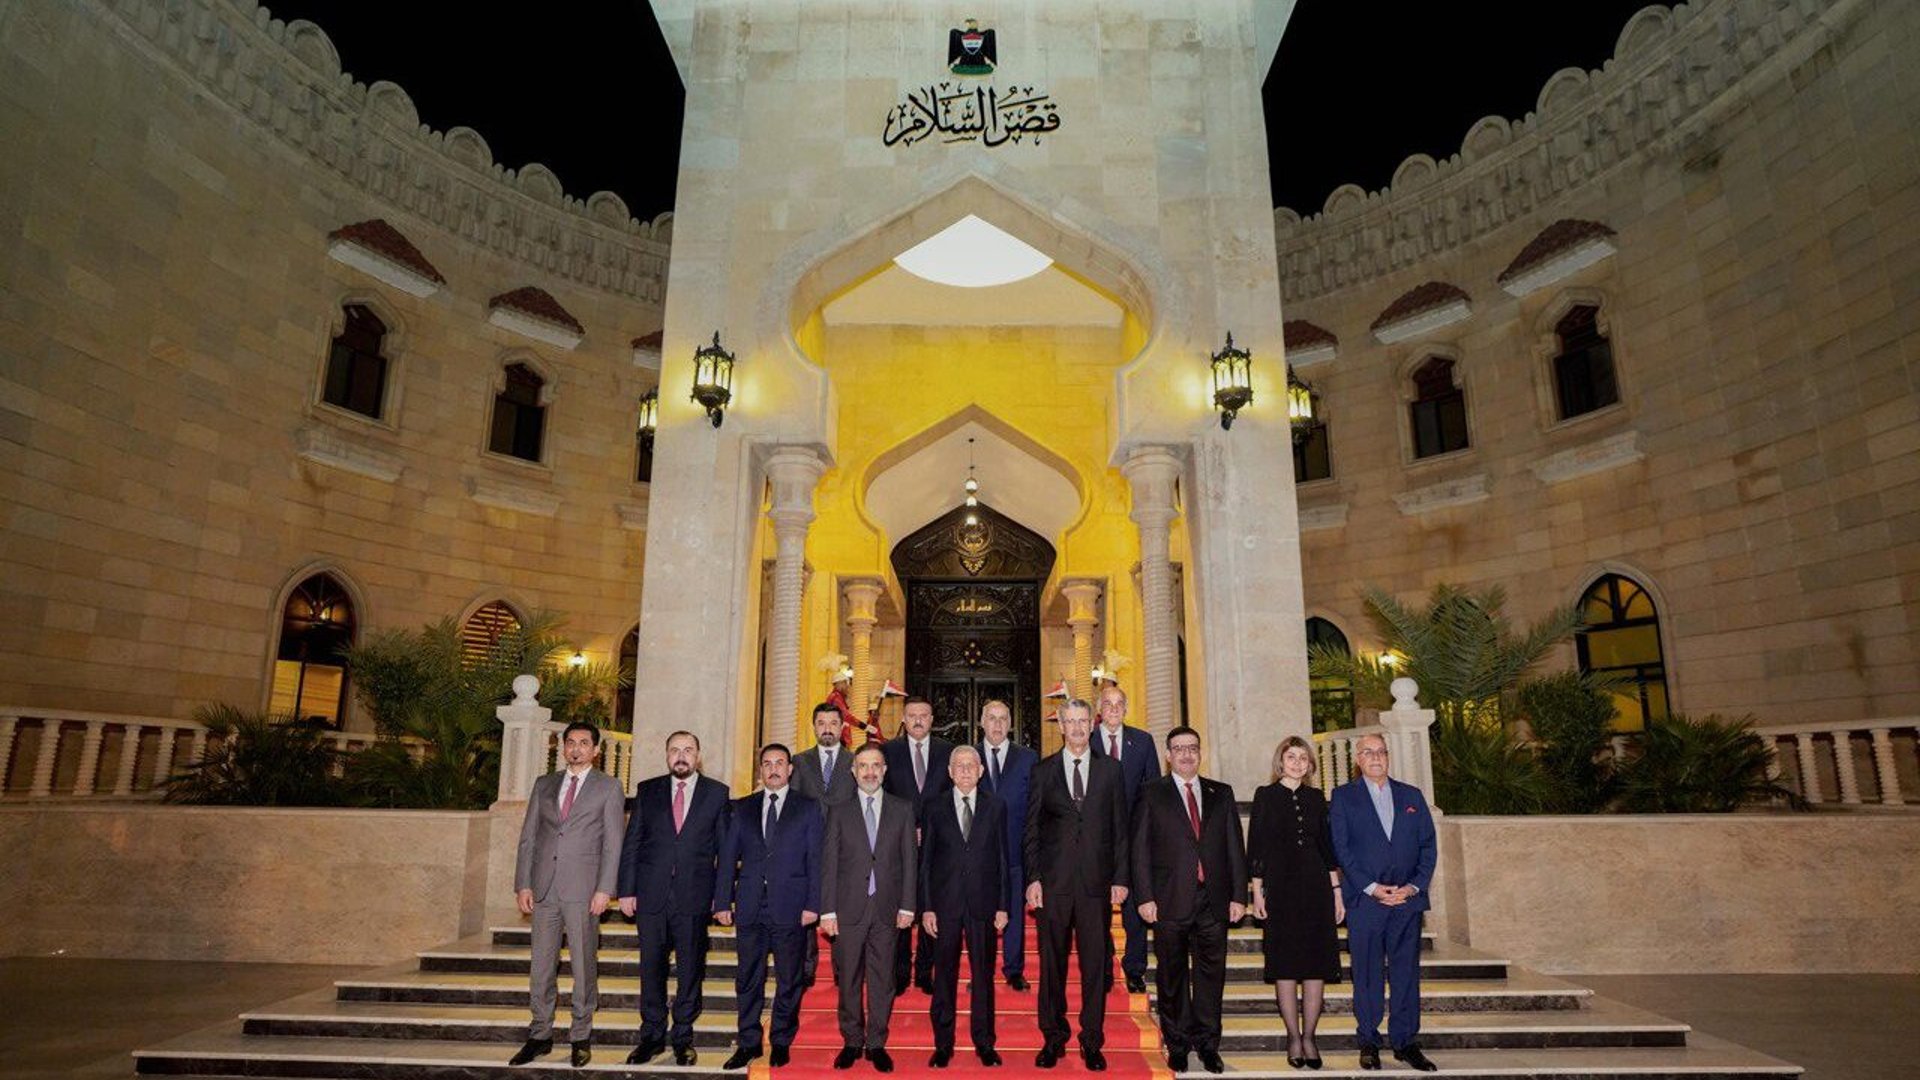 صورة أمام قصر السلام.. رئيس الجمهورية يستضيف عدداً من الوزراء